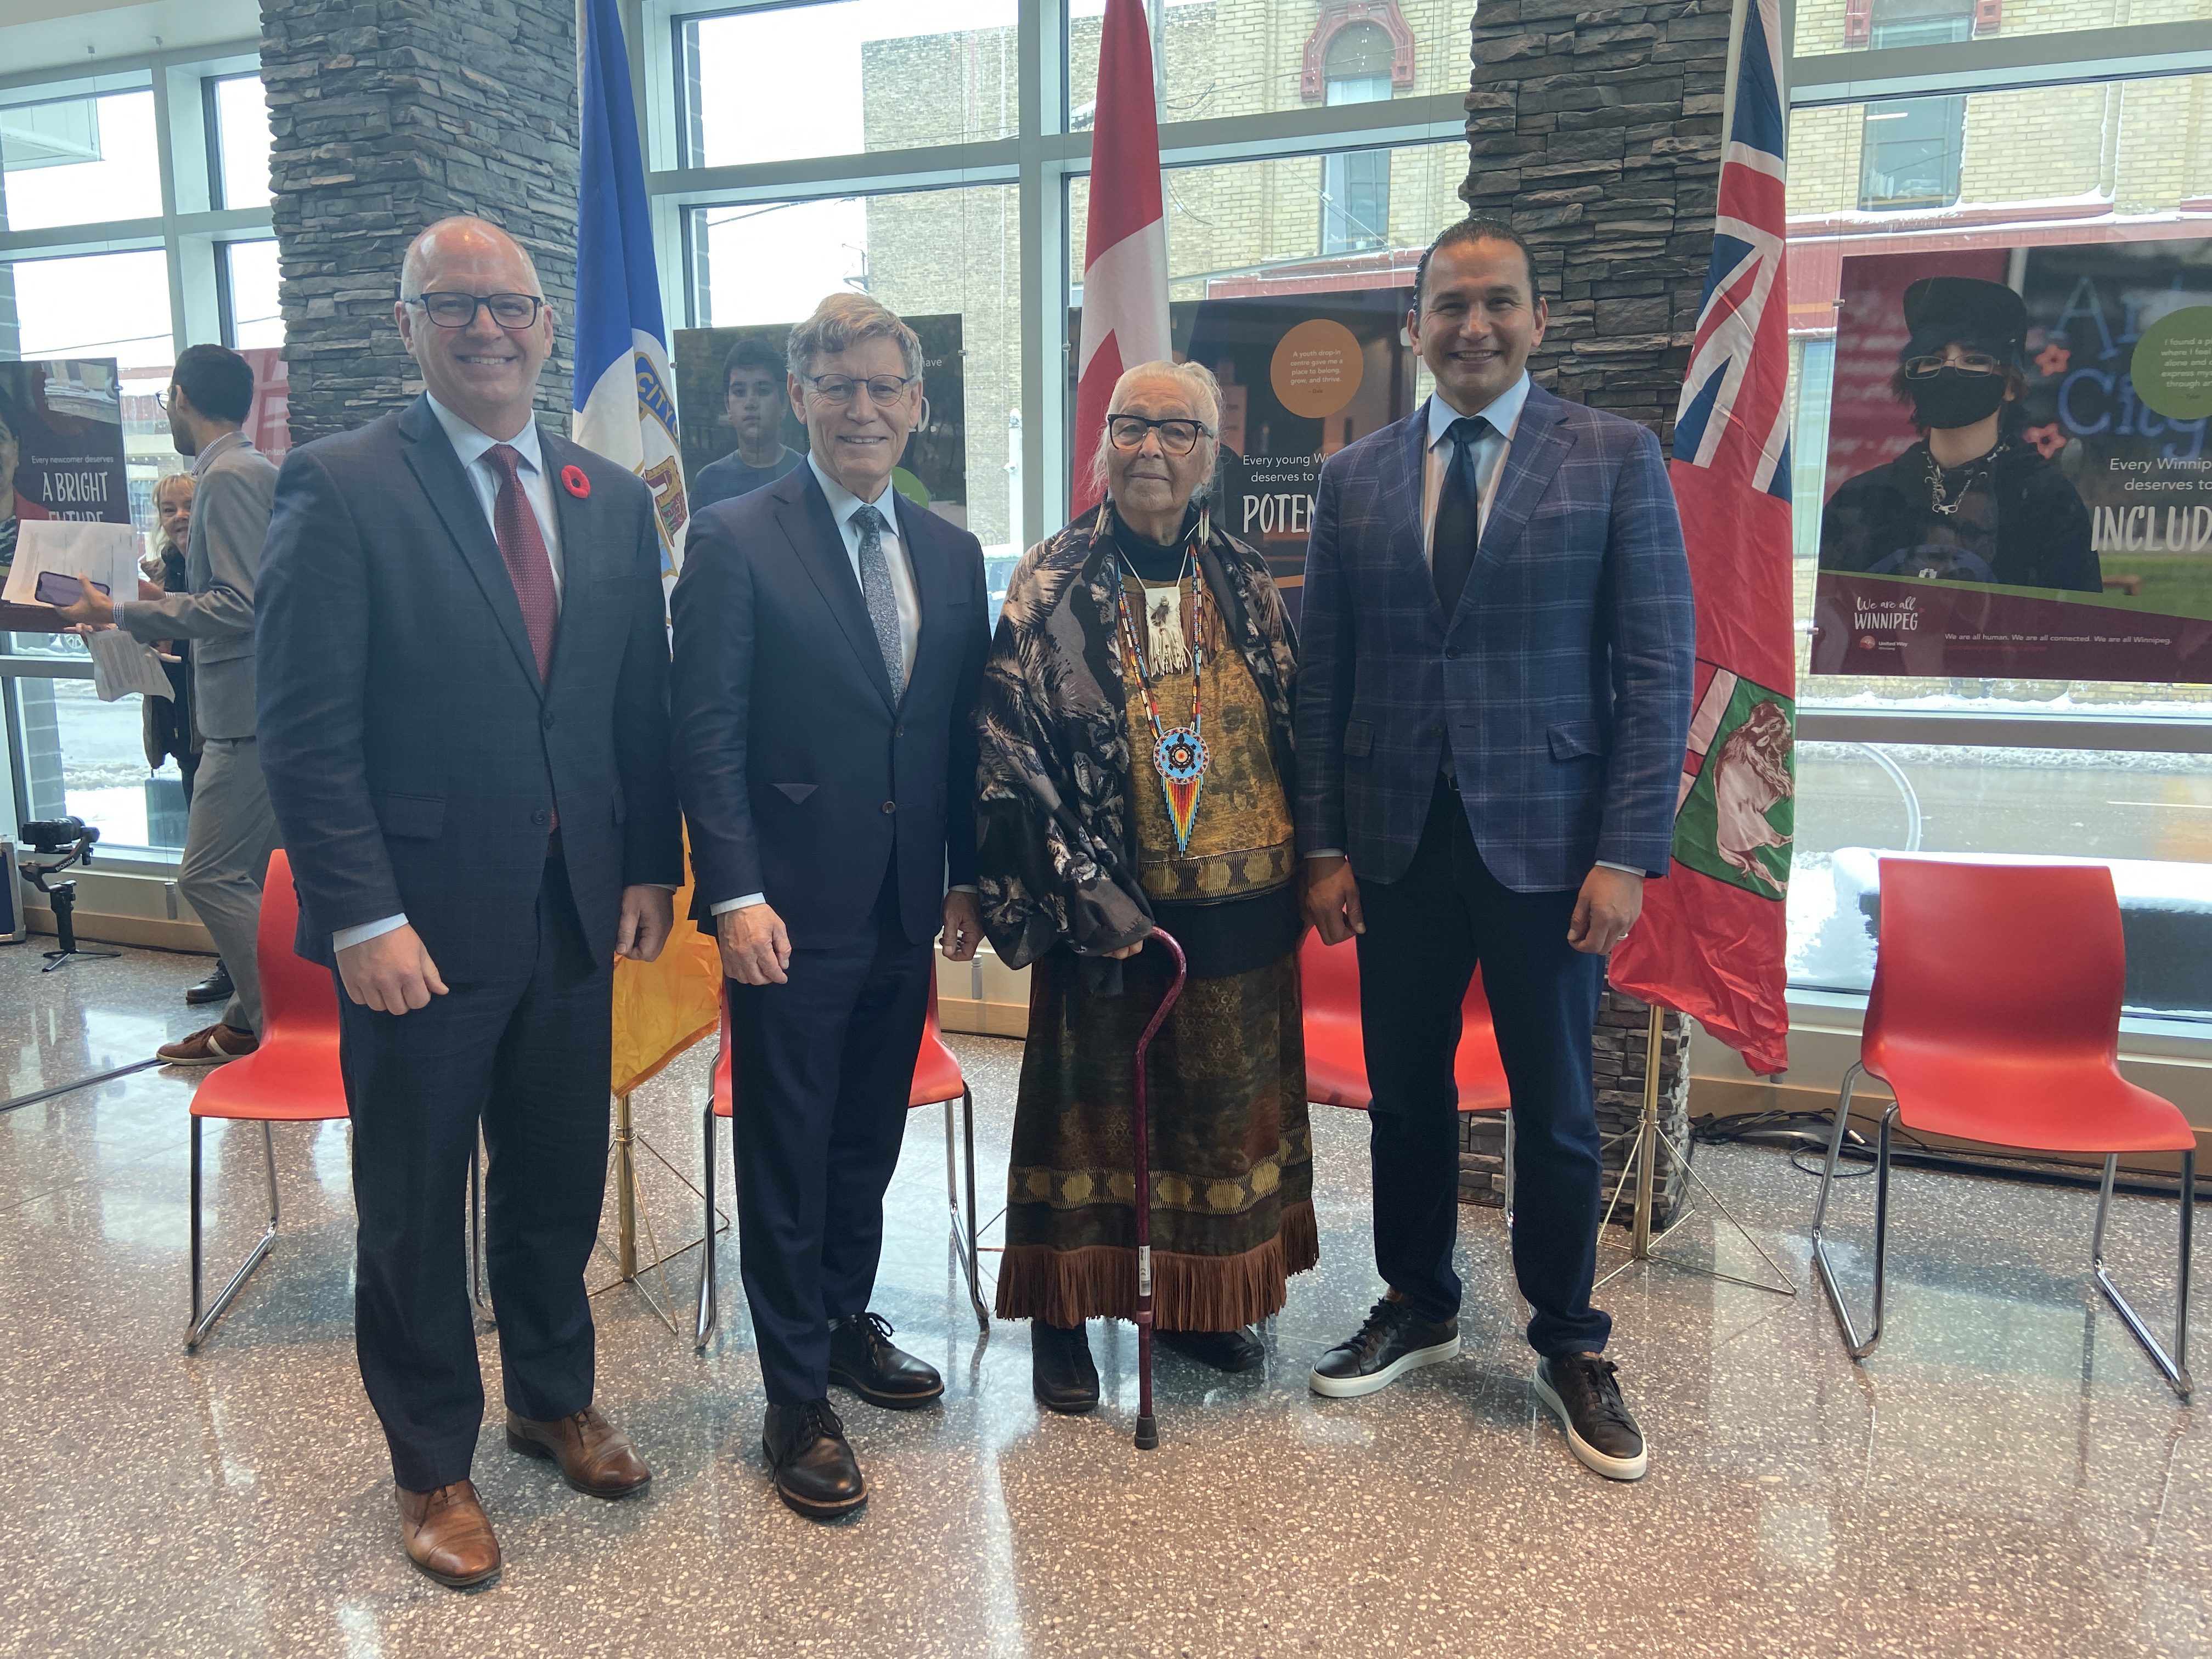 De gauche à droite : Scott Gillingham, maire de Winnipeg; Terry Duguid, secrétaire parlementaire du Premier ministre du Canada et membre du Parlement pour Winnipeg Sud; l'Aînée Mae Louise Campbell et Wab Kinew, premier ministre du Manitoba. (photo : Ophélie Doireau)